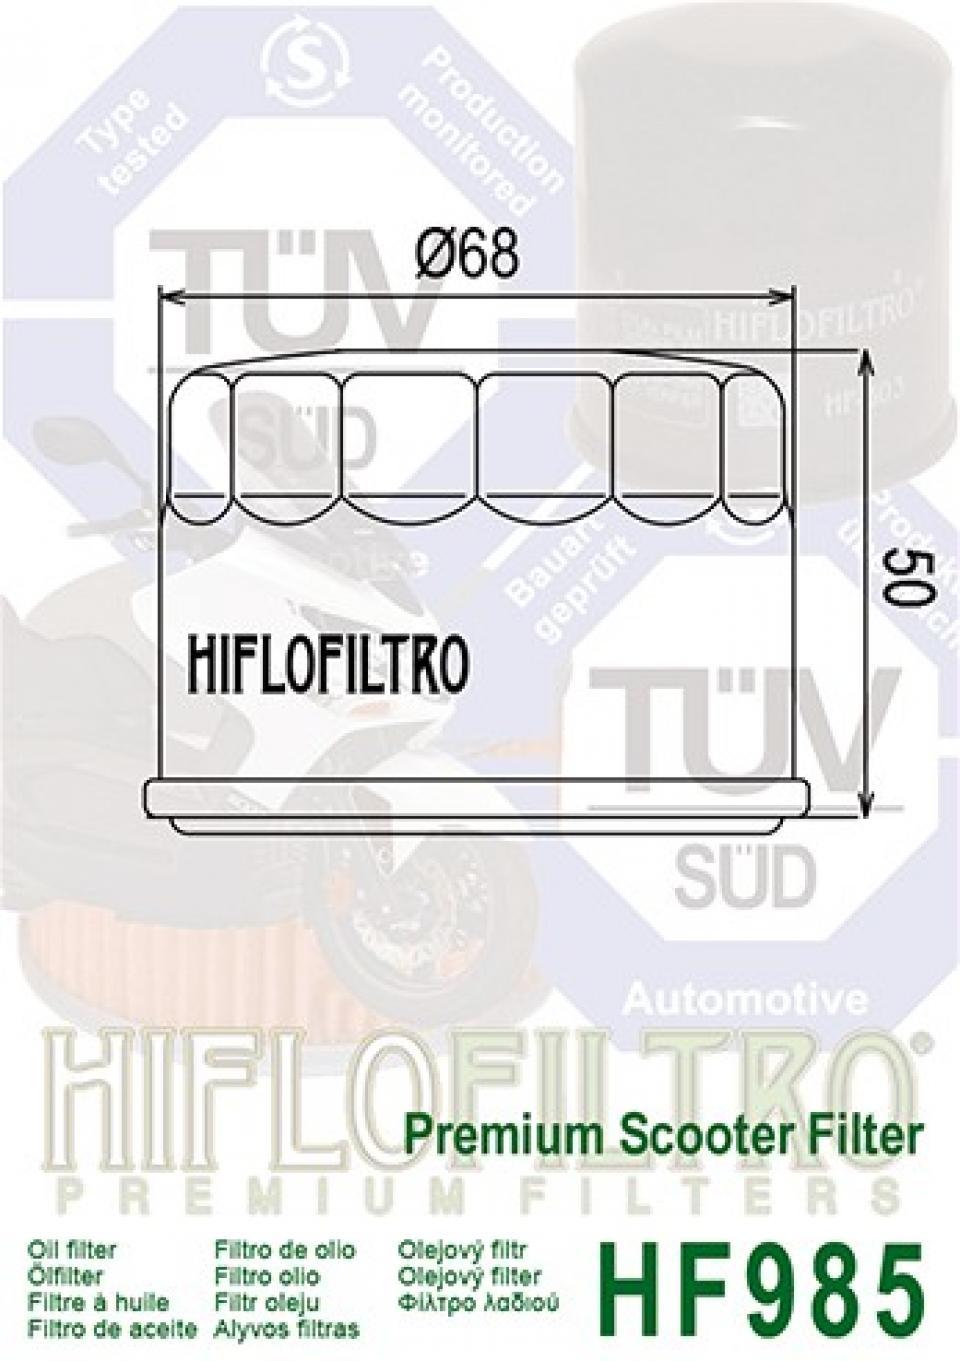 Filtre à huile Hiflofiltro pour Maxi Scooter Yamaha 530 Xp T-Max 2012 à 2016 Neuf